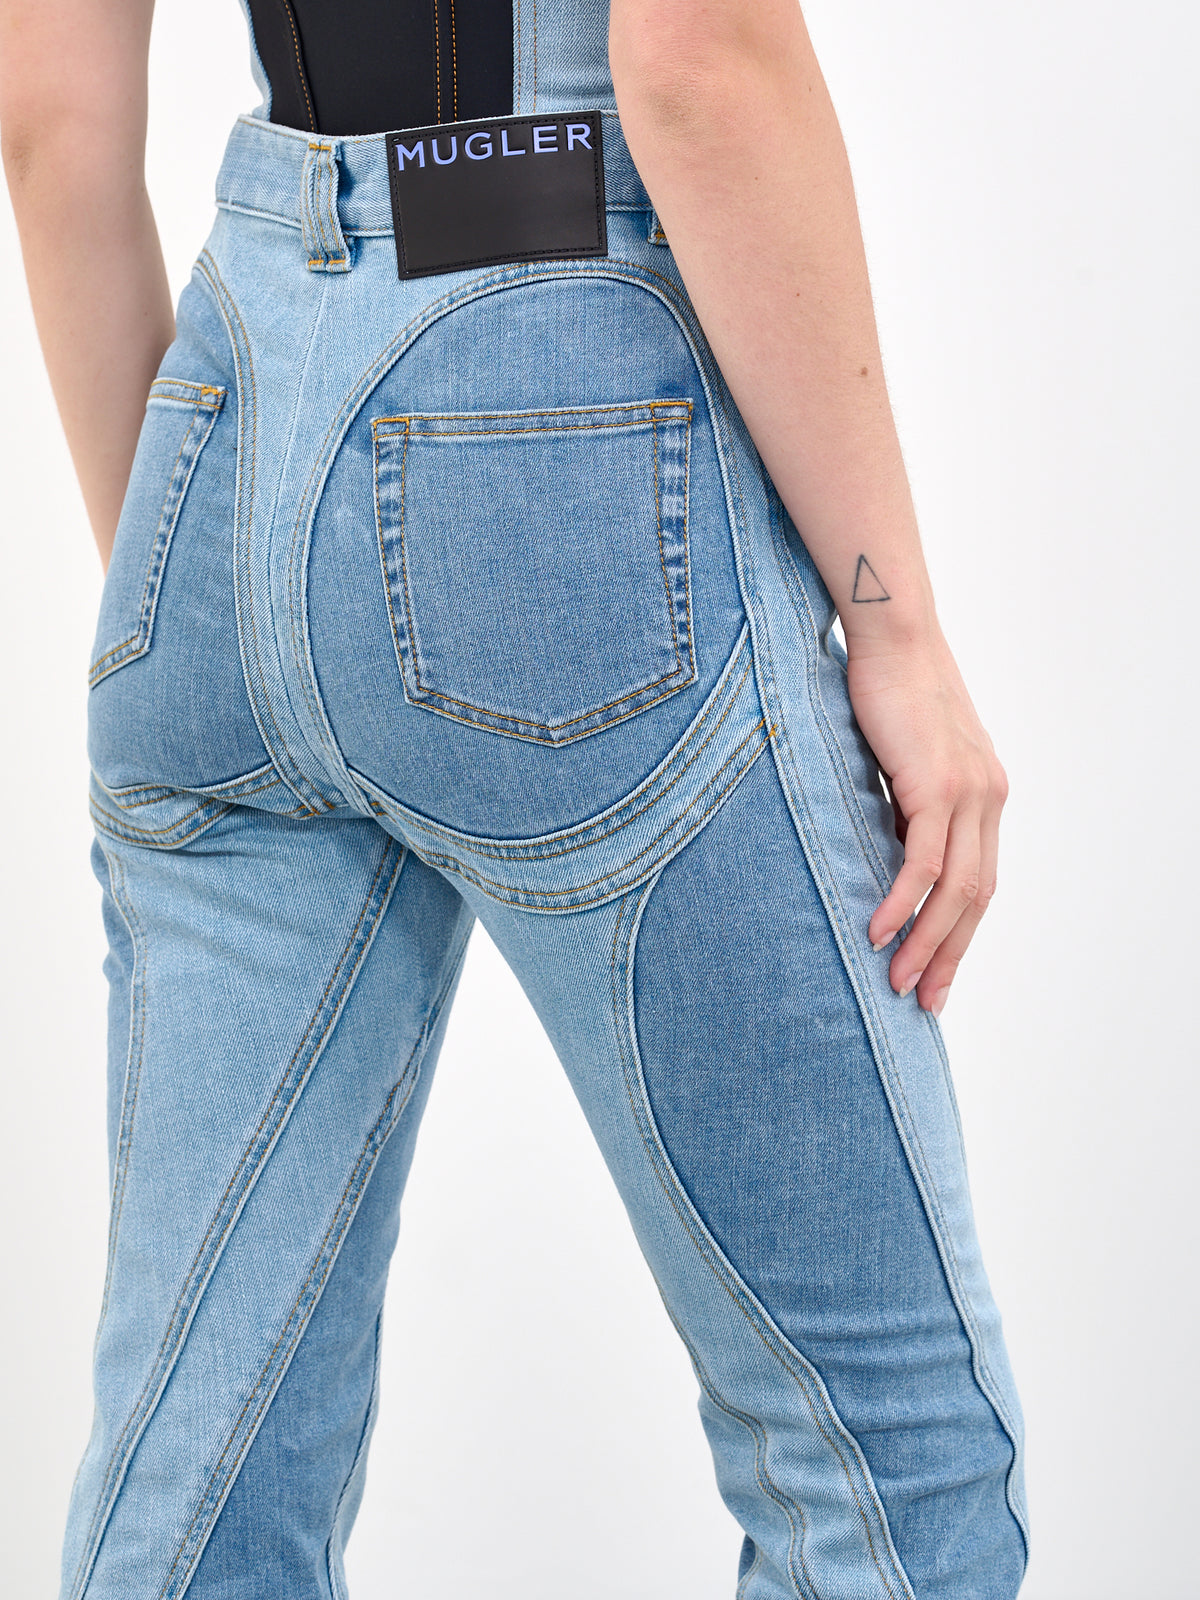 MUGLER Slit Spiral Jeans | H.Lorenzo - detail 2